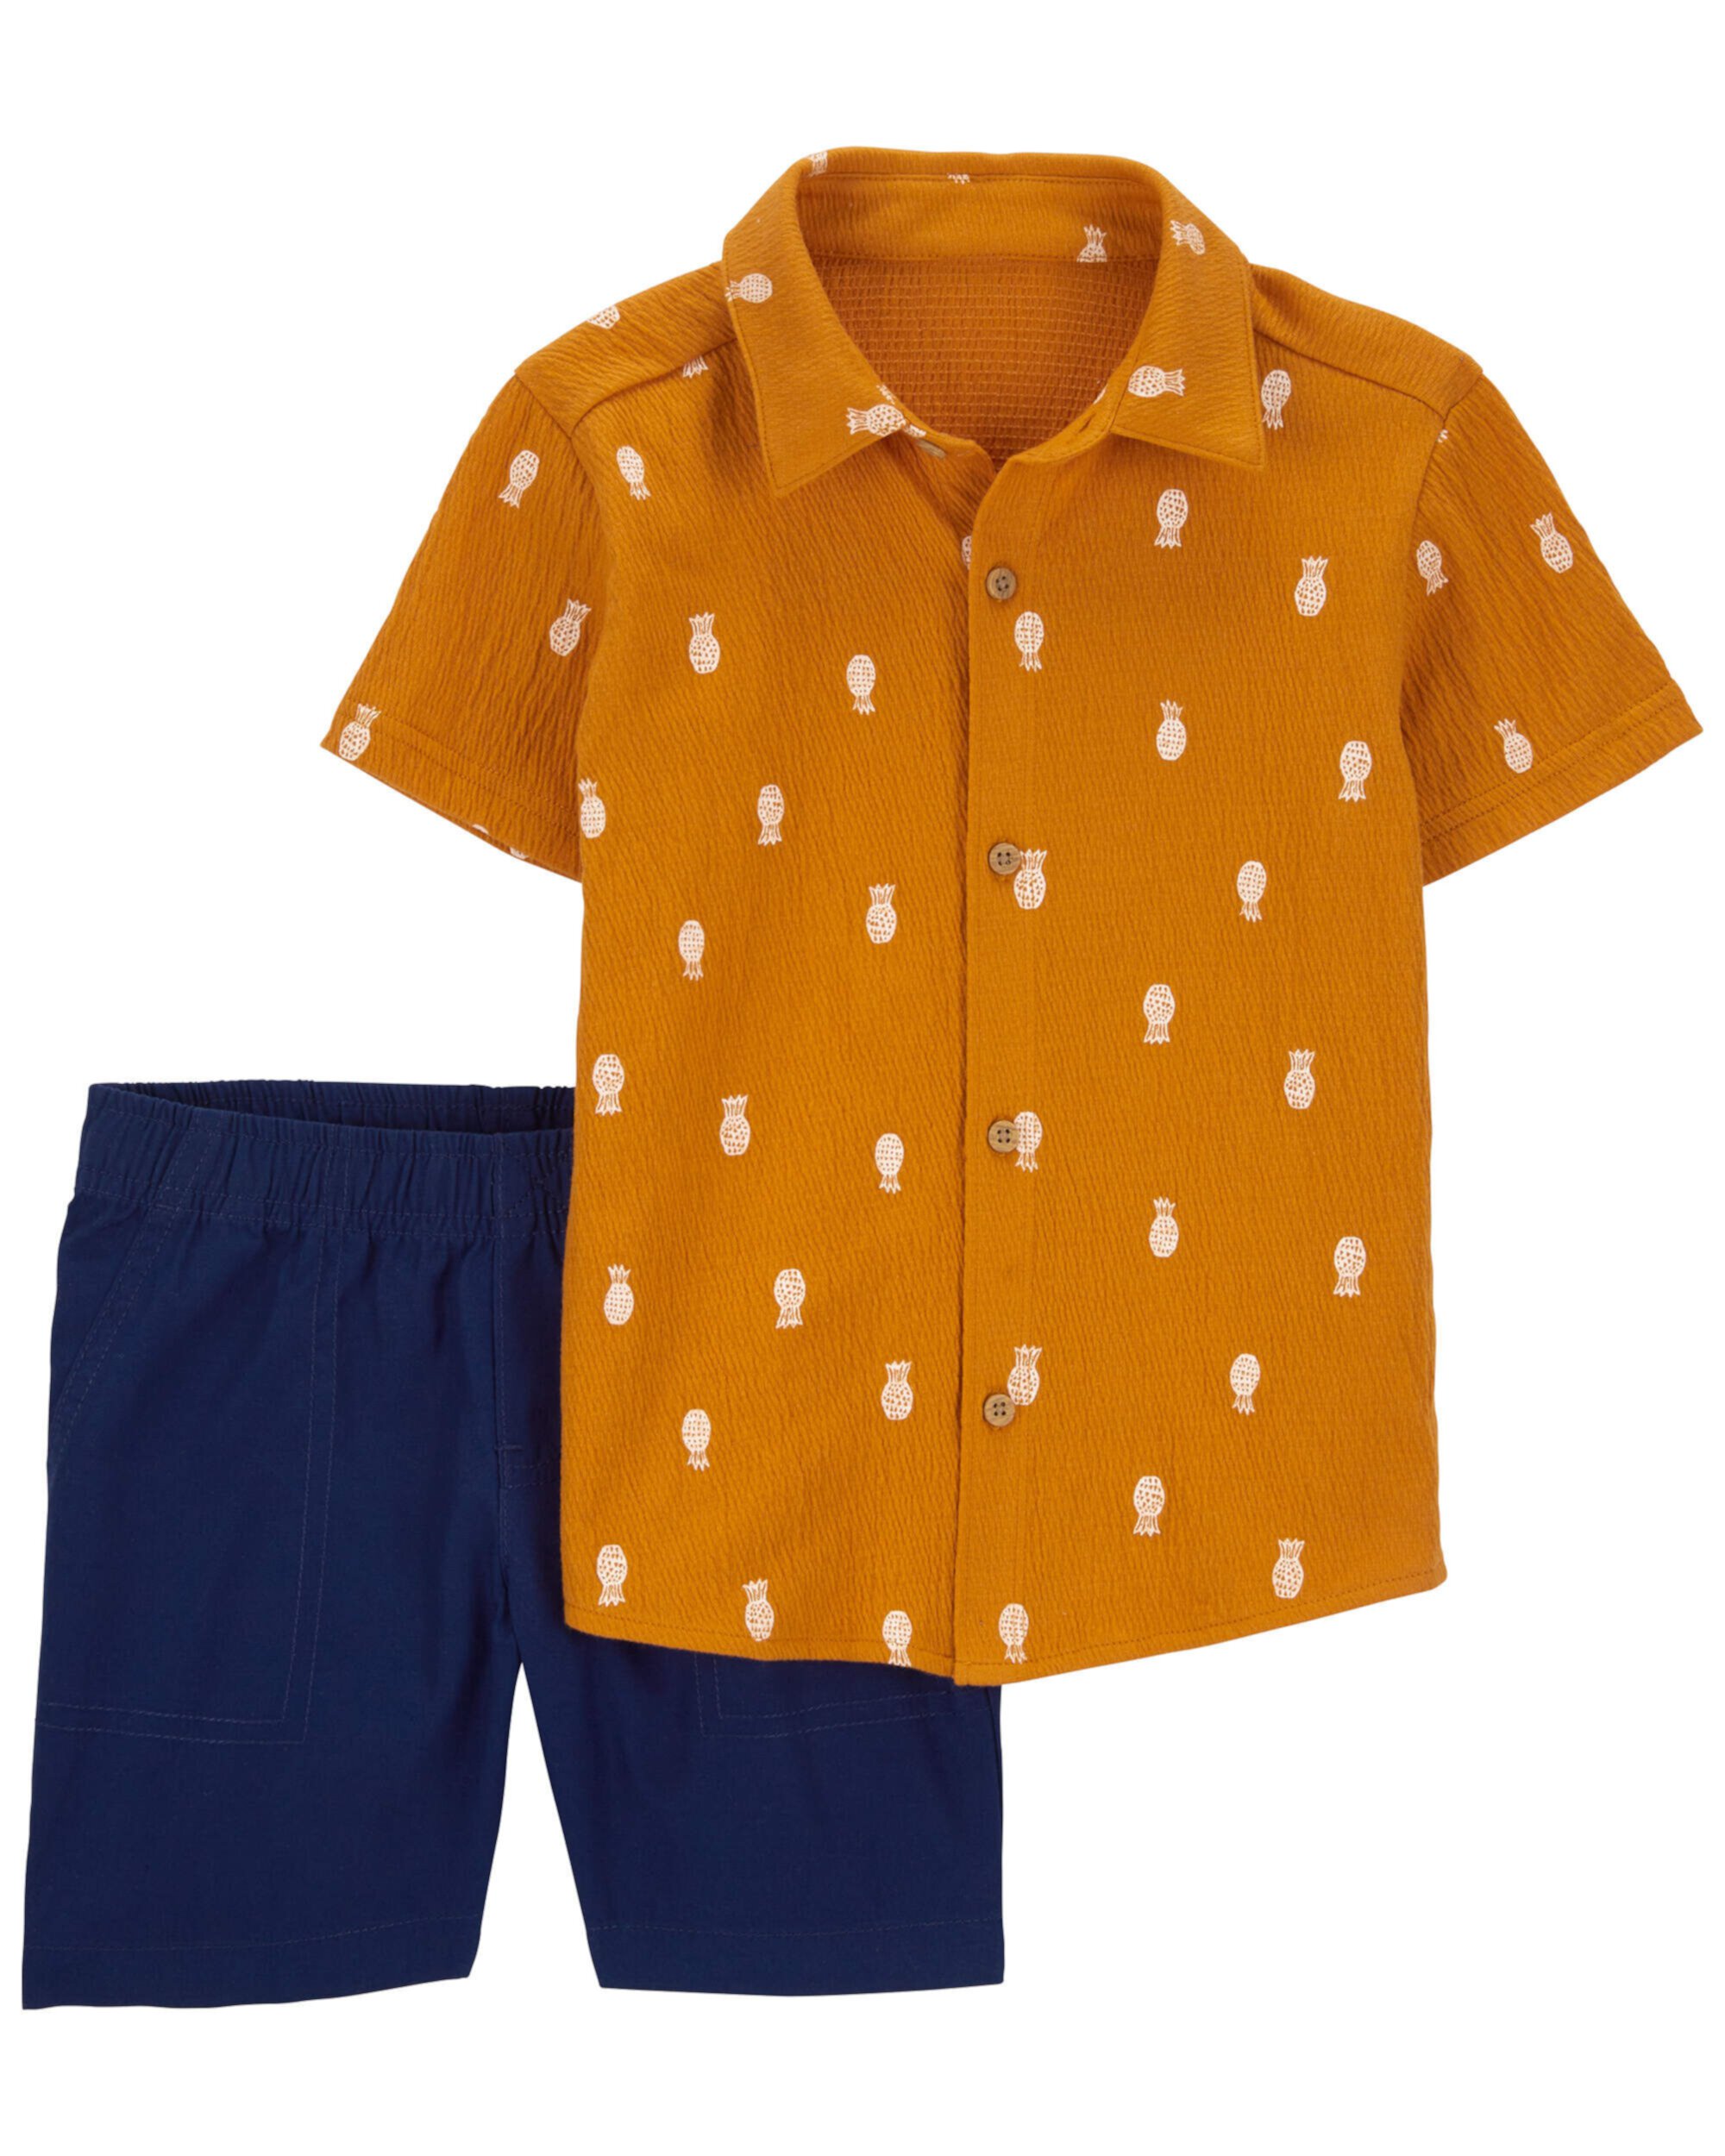 Комплект из двух предметов: рубашка с принтом ананаса и шорты из парусины для малышей Carter's